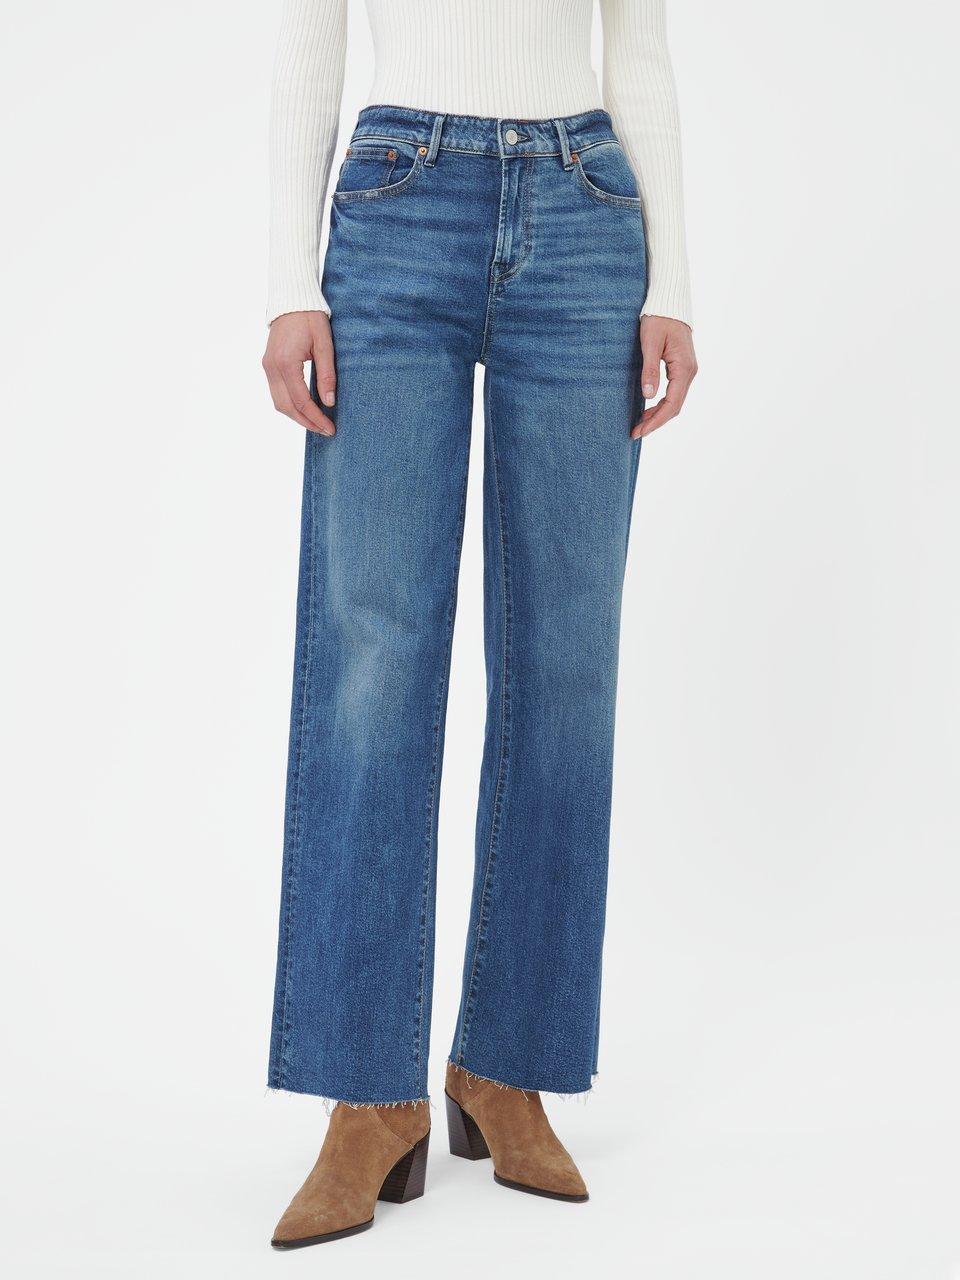 Denham - Jeans 'Keira' in inchlengte 32